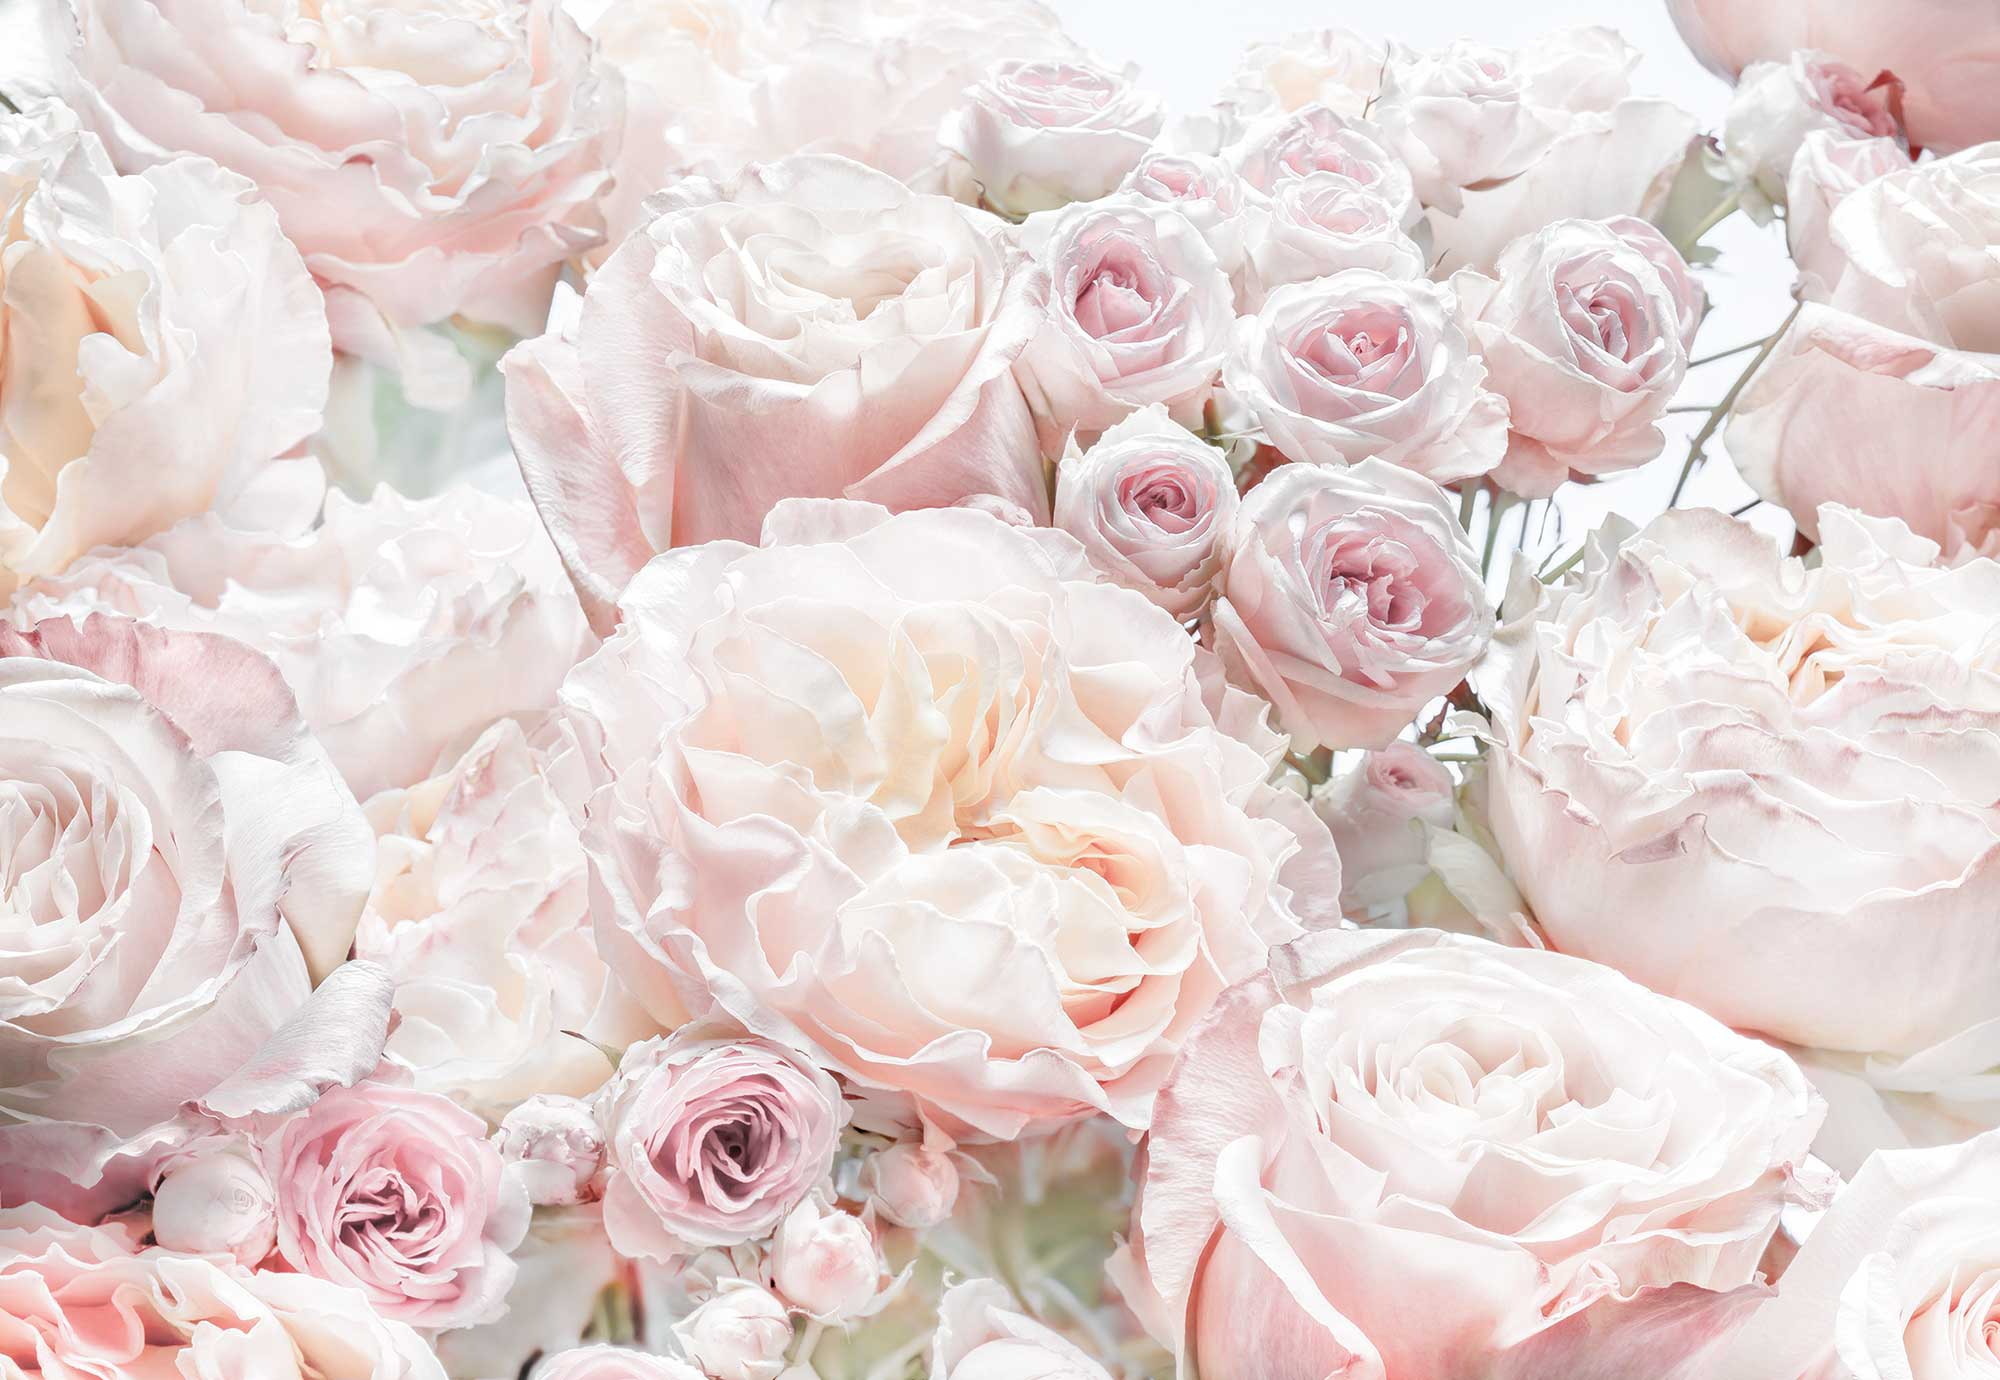 Fototapete „Spring Roses“ von Komar